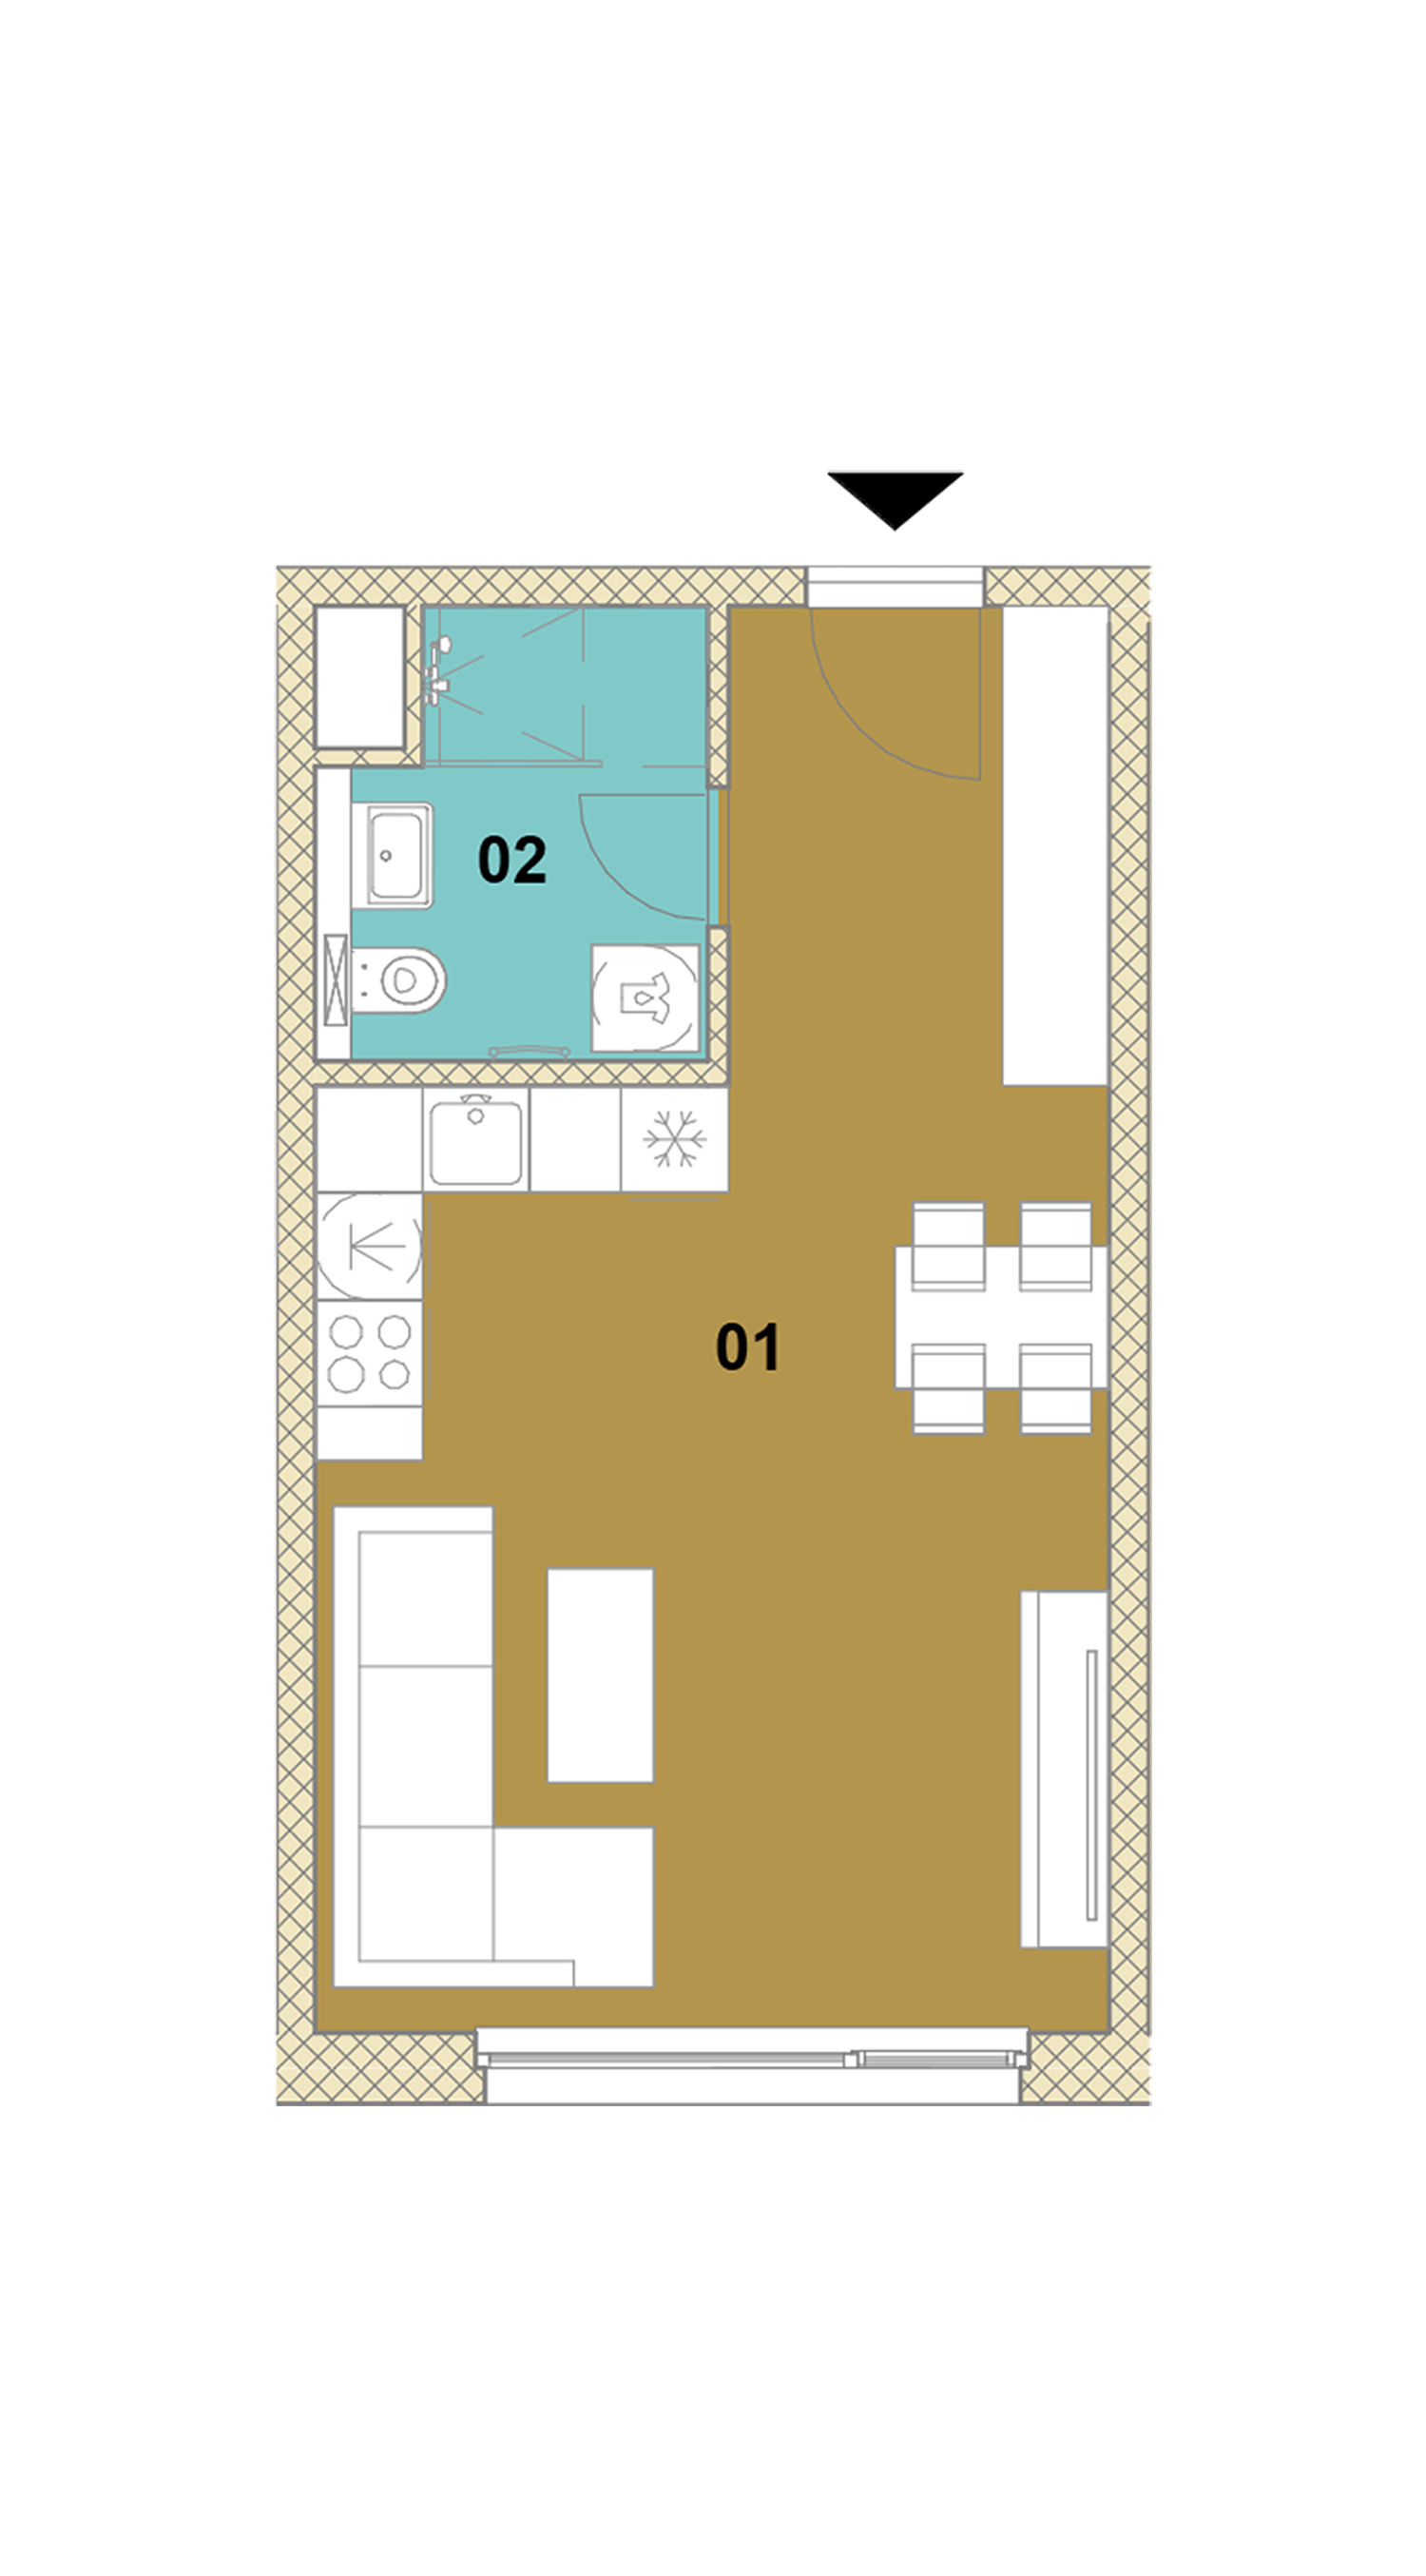 Jednoizbový byt E1-303